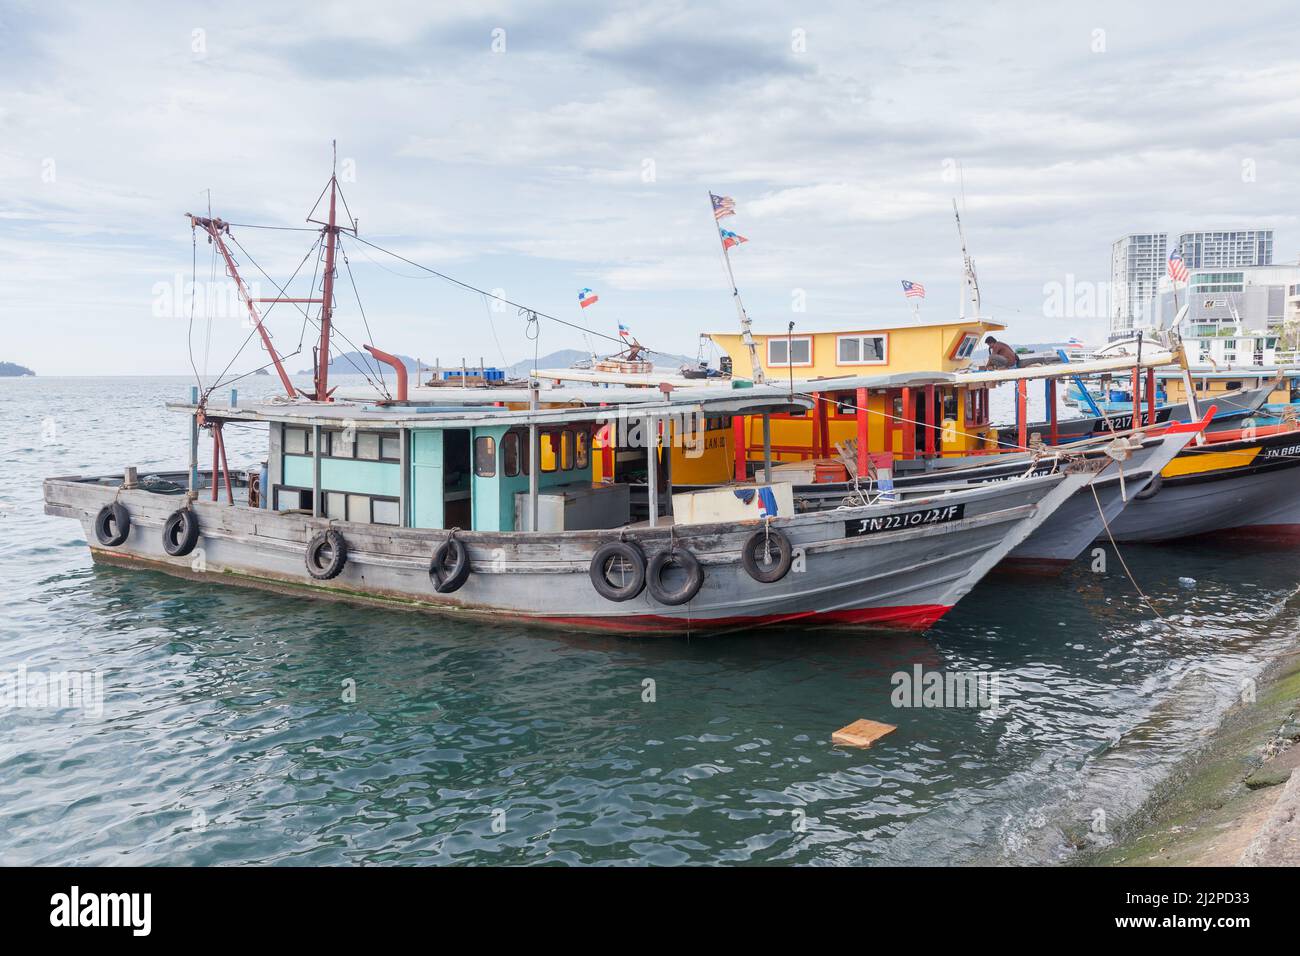 Kota Kinabalu, Malesia - 23 marzo 2019: Barche da pesca ormeggiate nei pressi del mercato del pesce KK in una giornata di sole Foto Stock